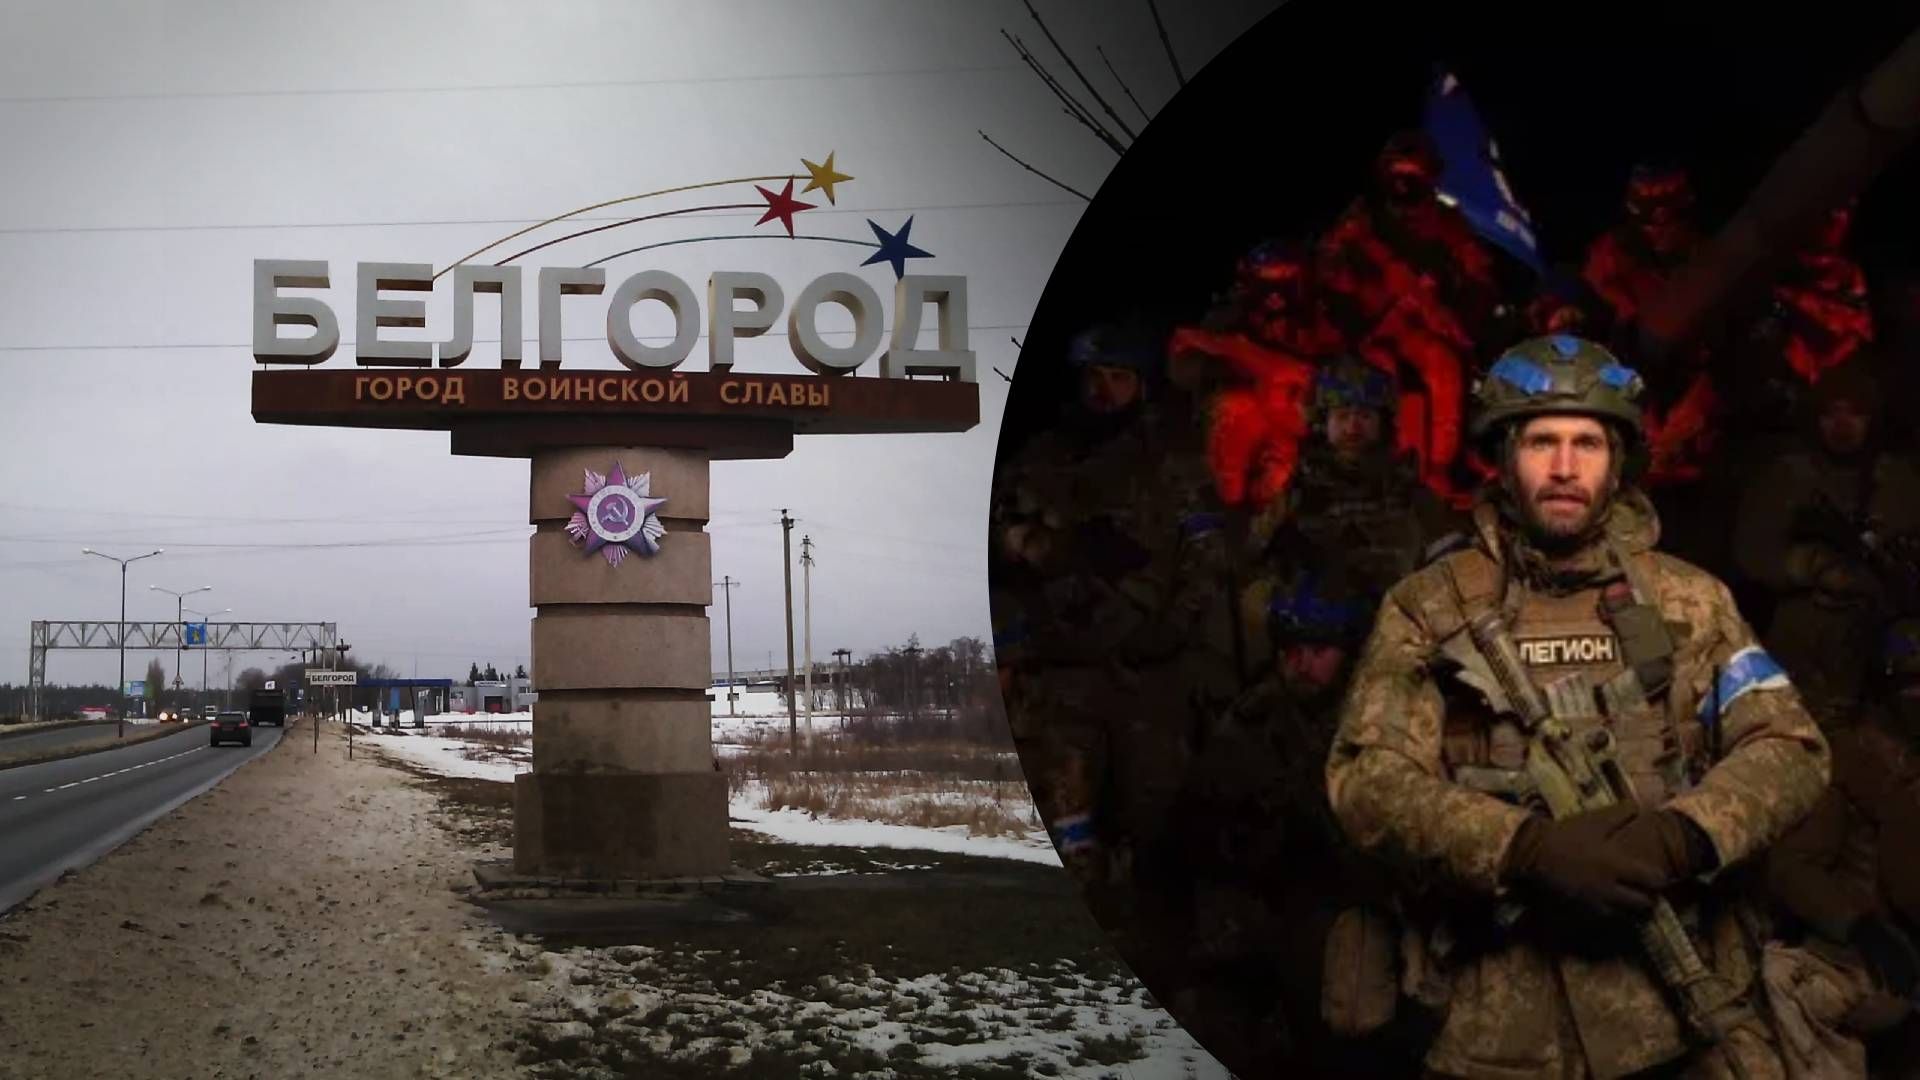 Az oroszok felkelése a Putyin-rezsim ellen: a belgorodi harcok folytatása